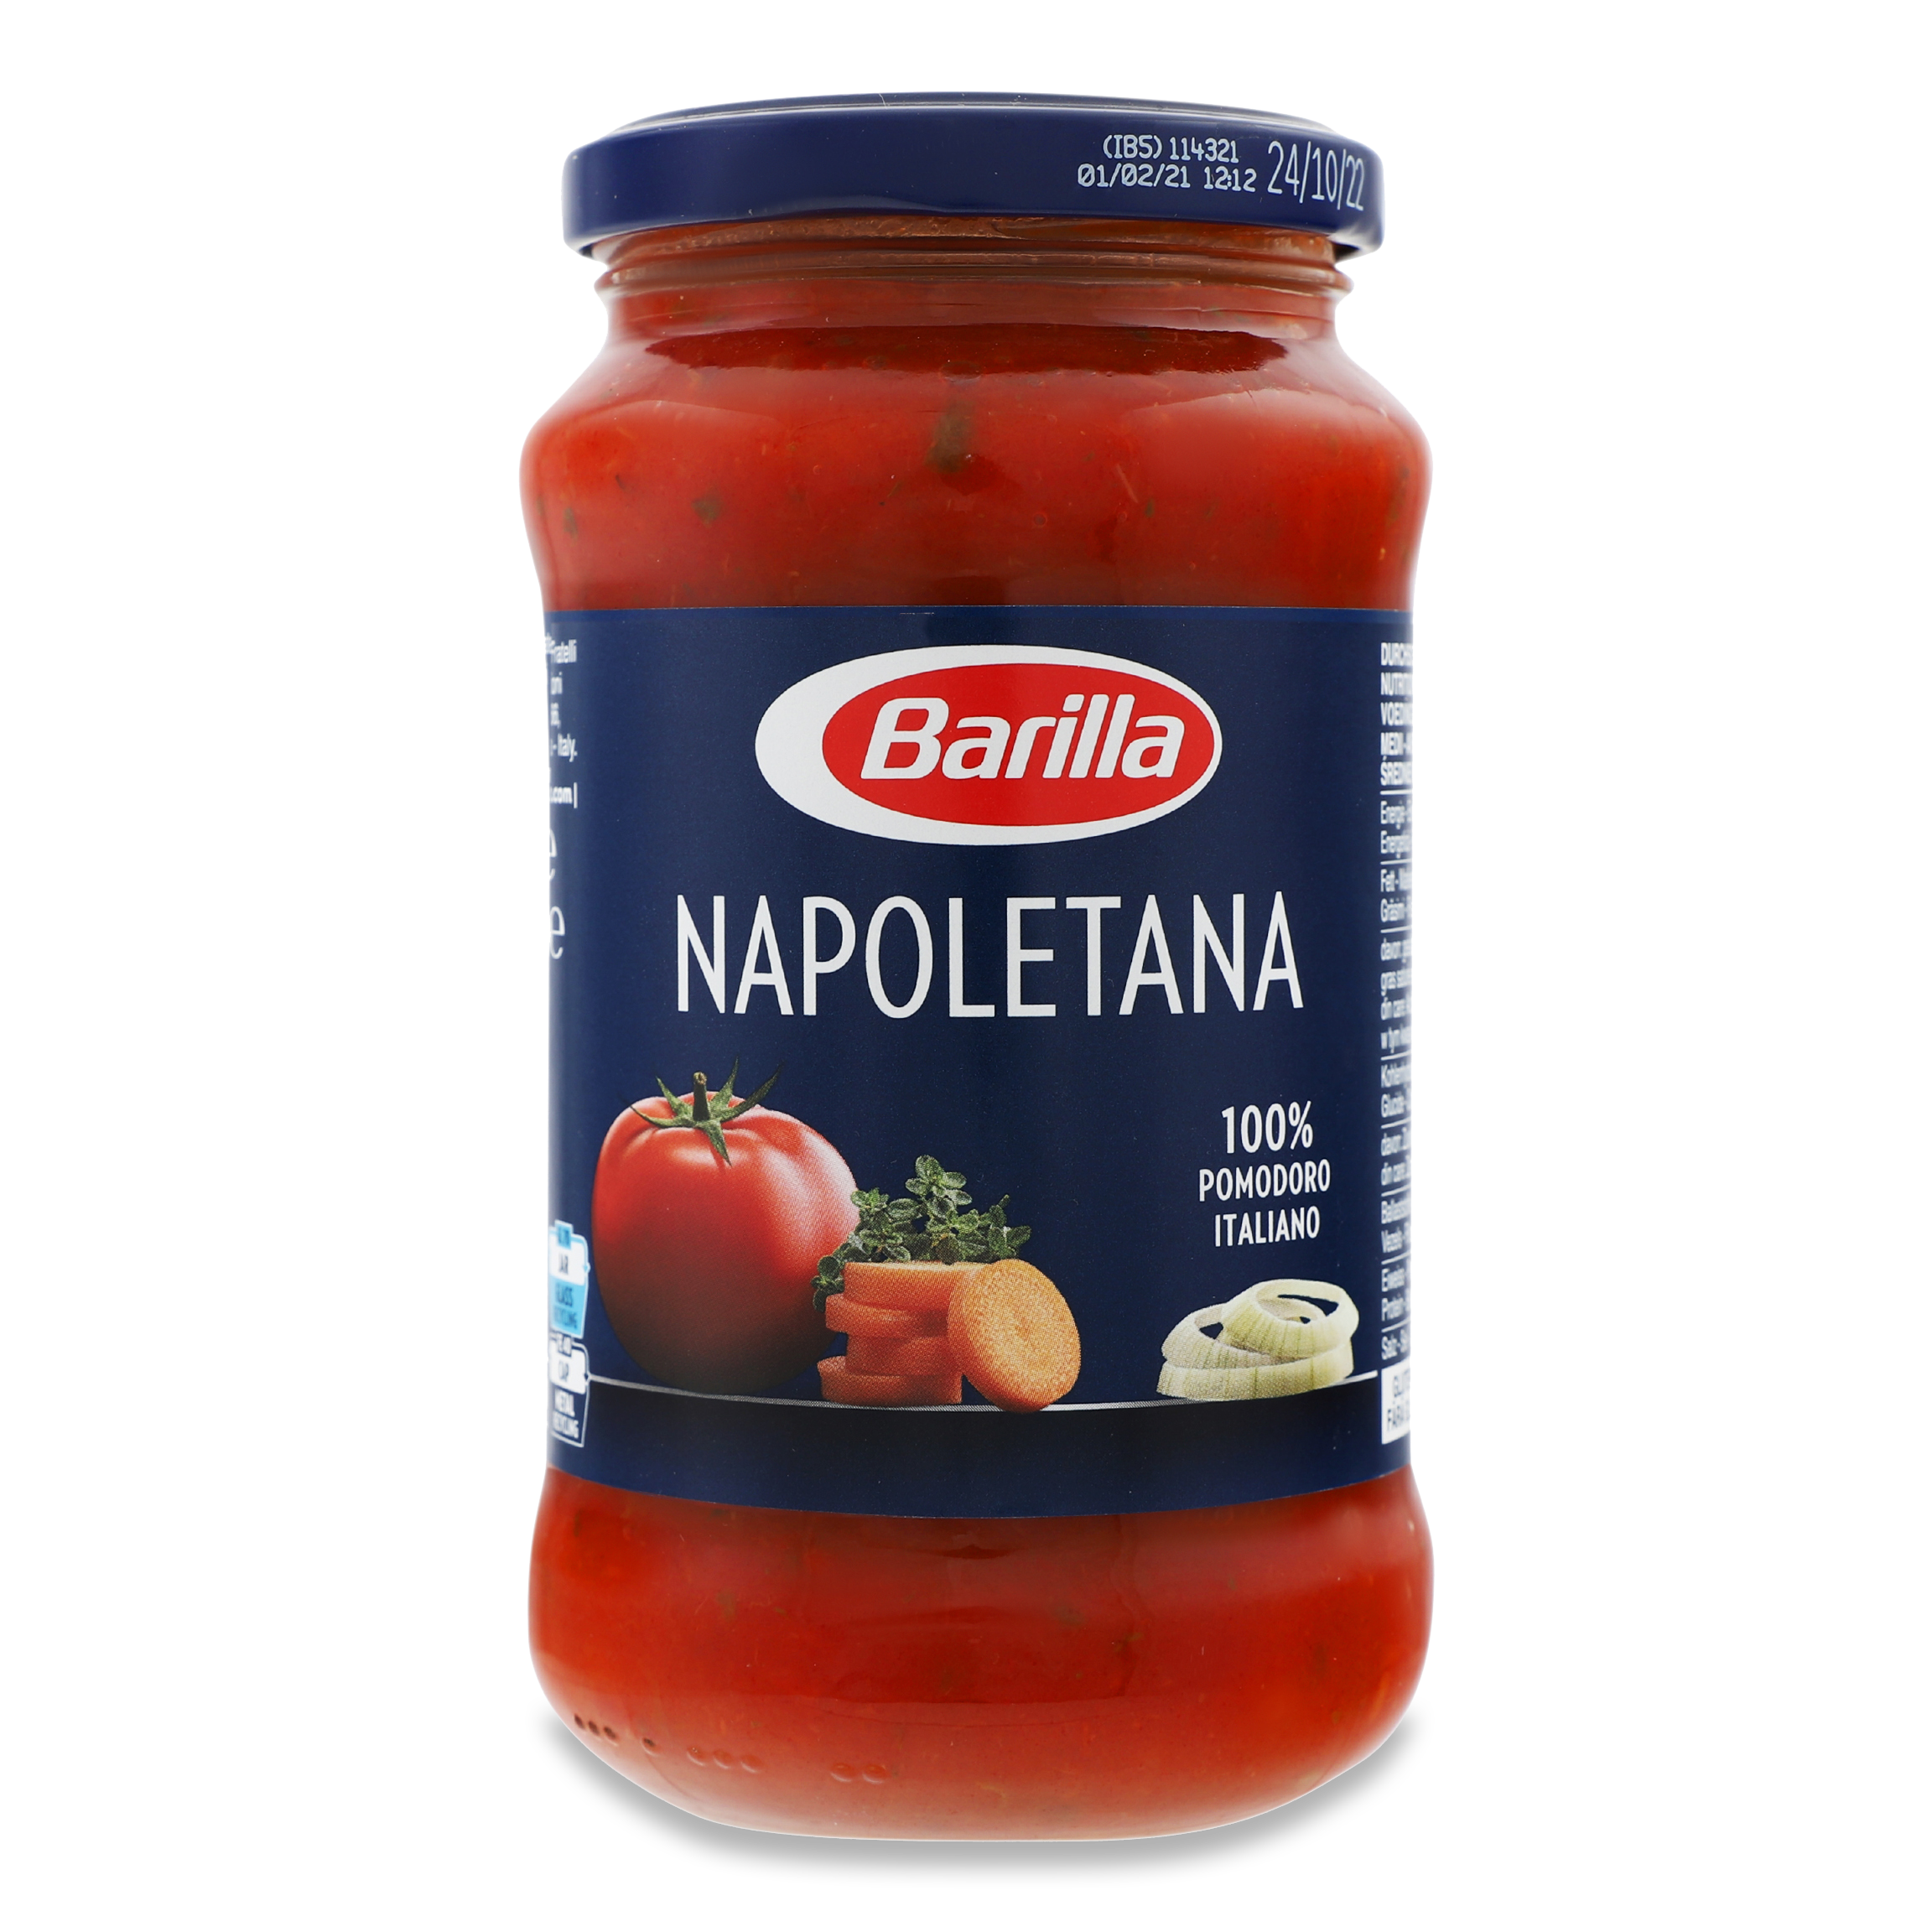 Barіlla Napoletana tomato sauce 400g